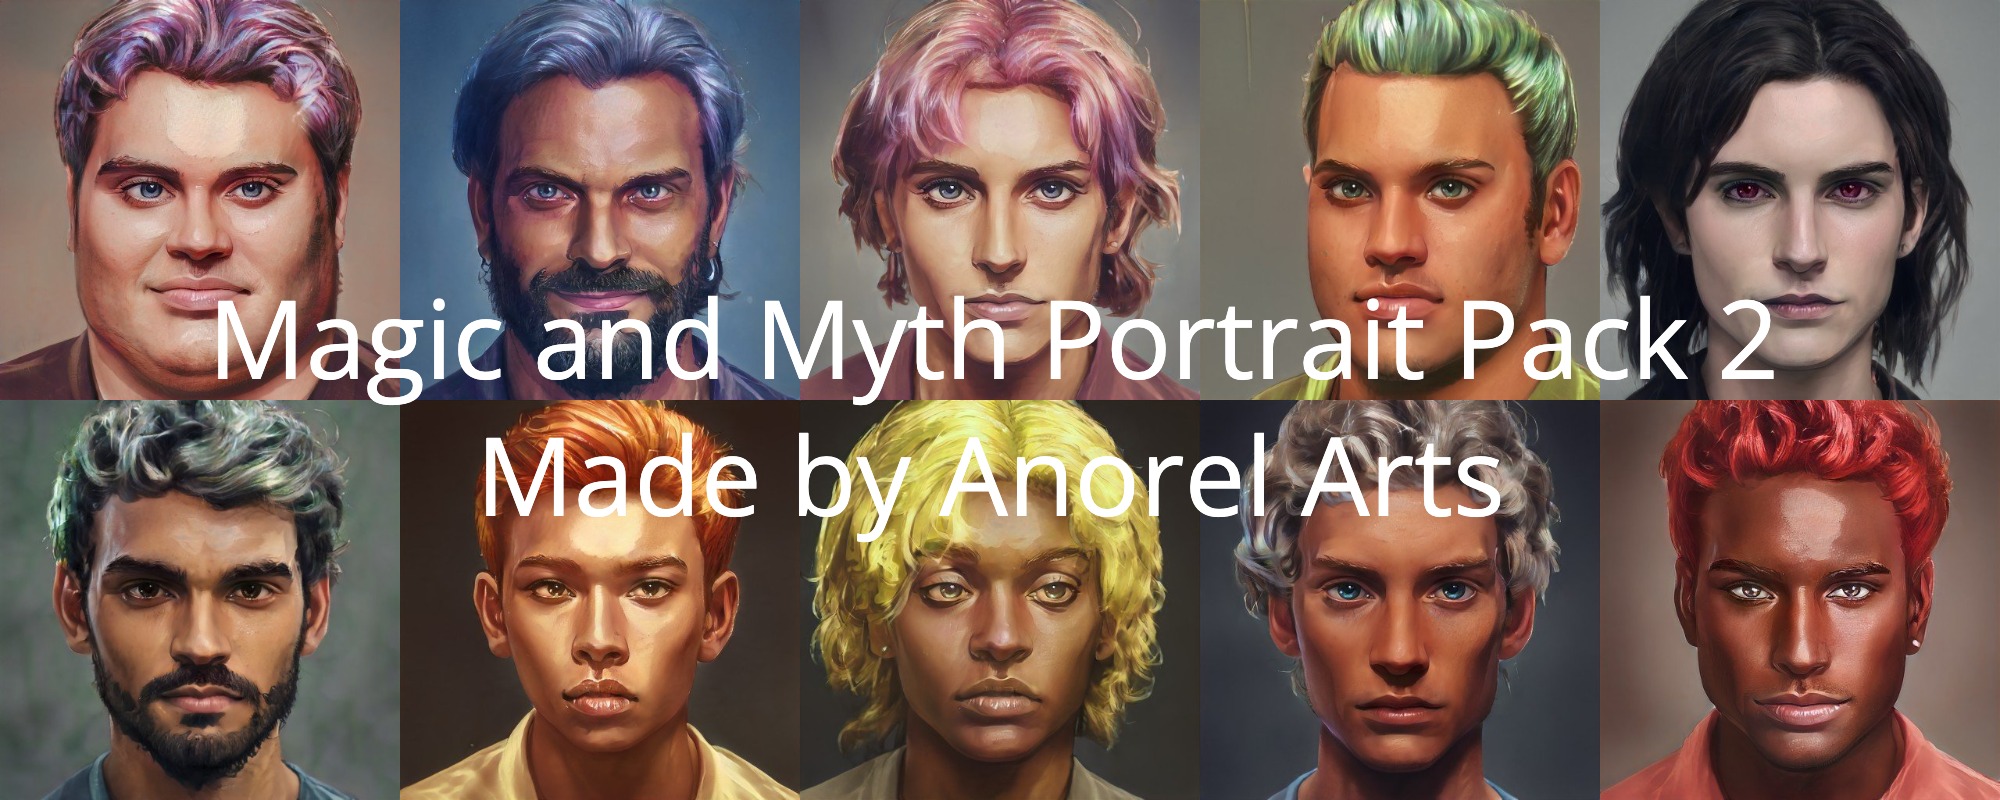 Magic and Myth Portrait Pack 2